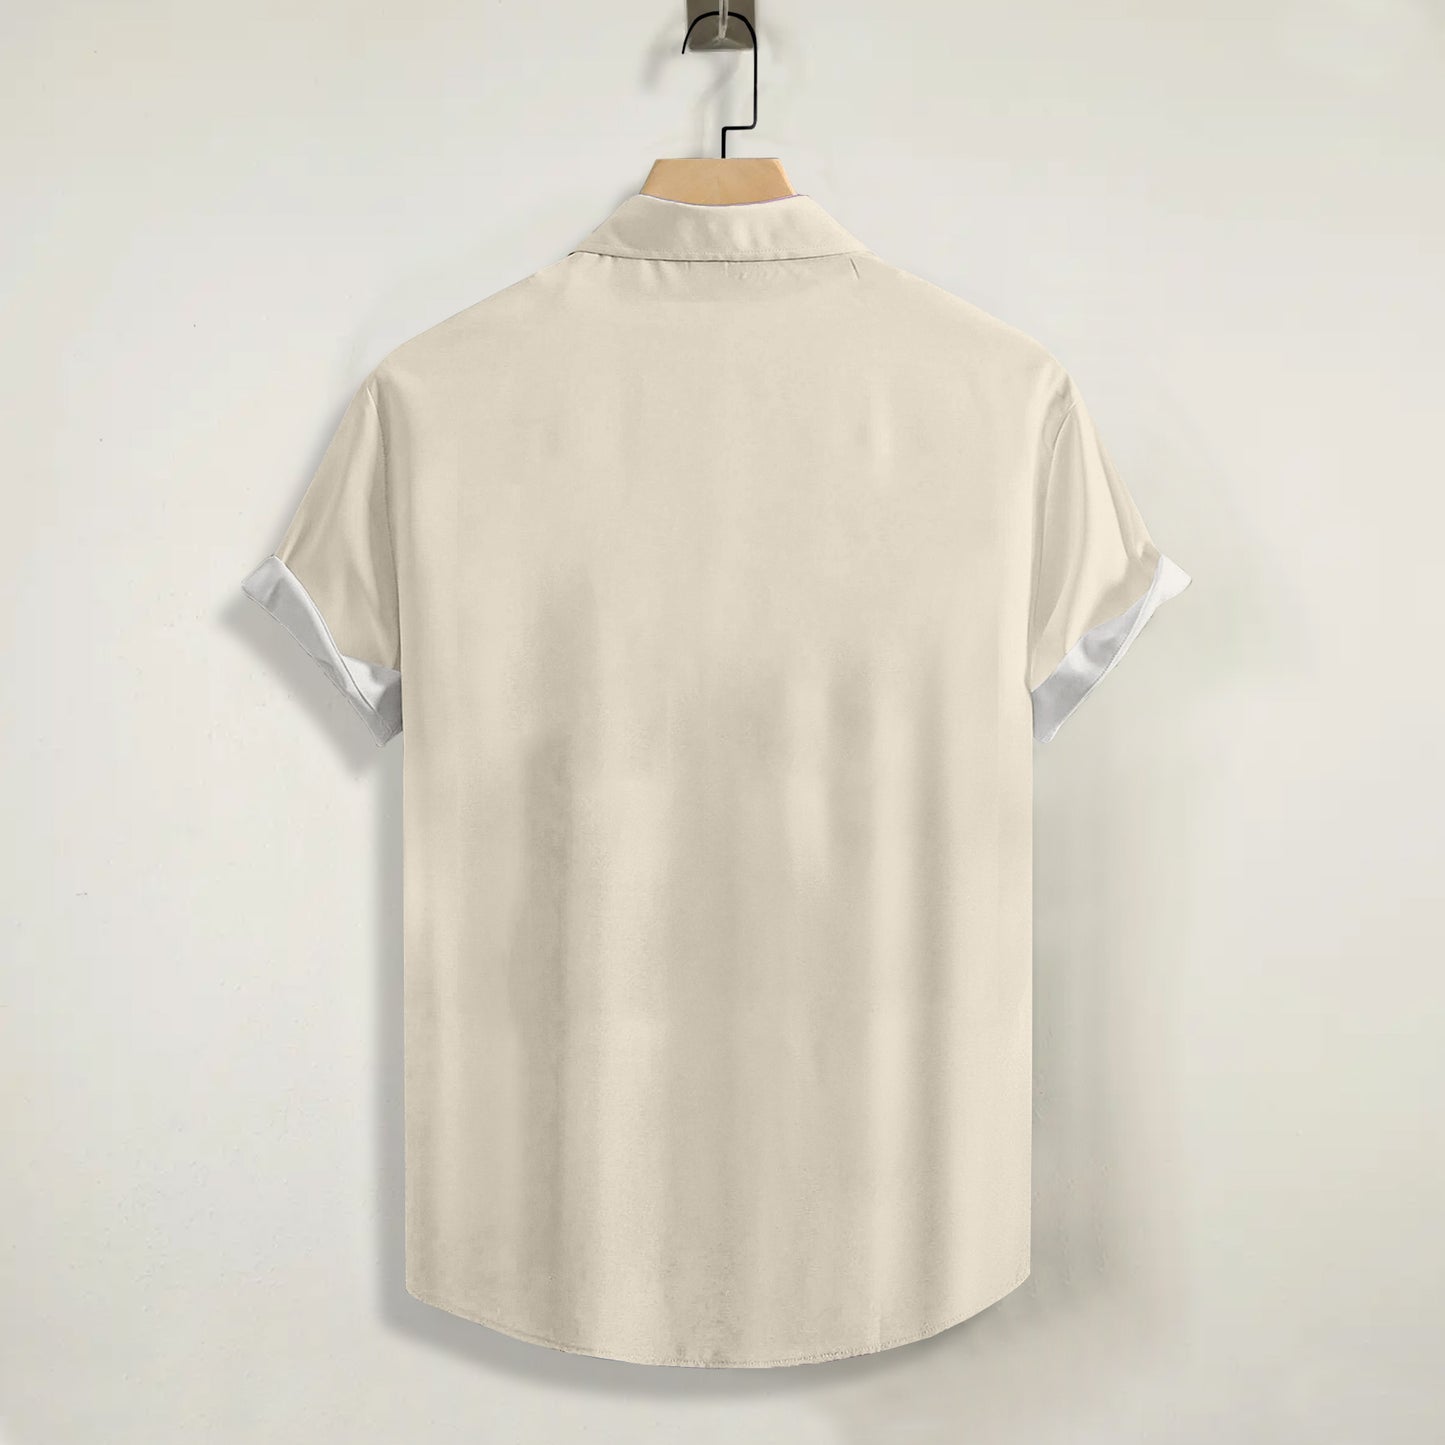 St. Louis Cardinals Print Short Sleeve Shirt